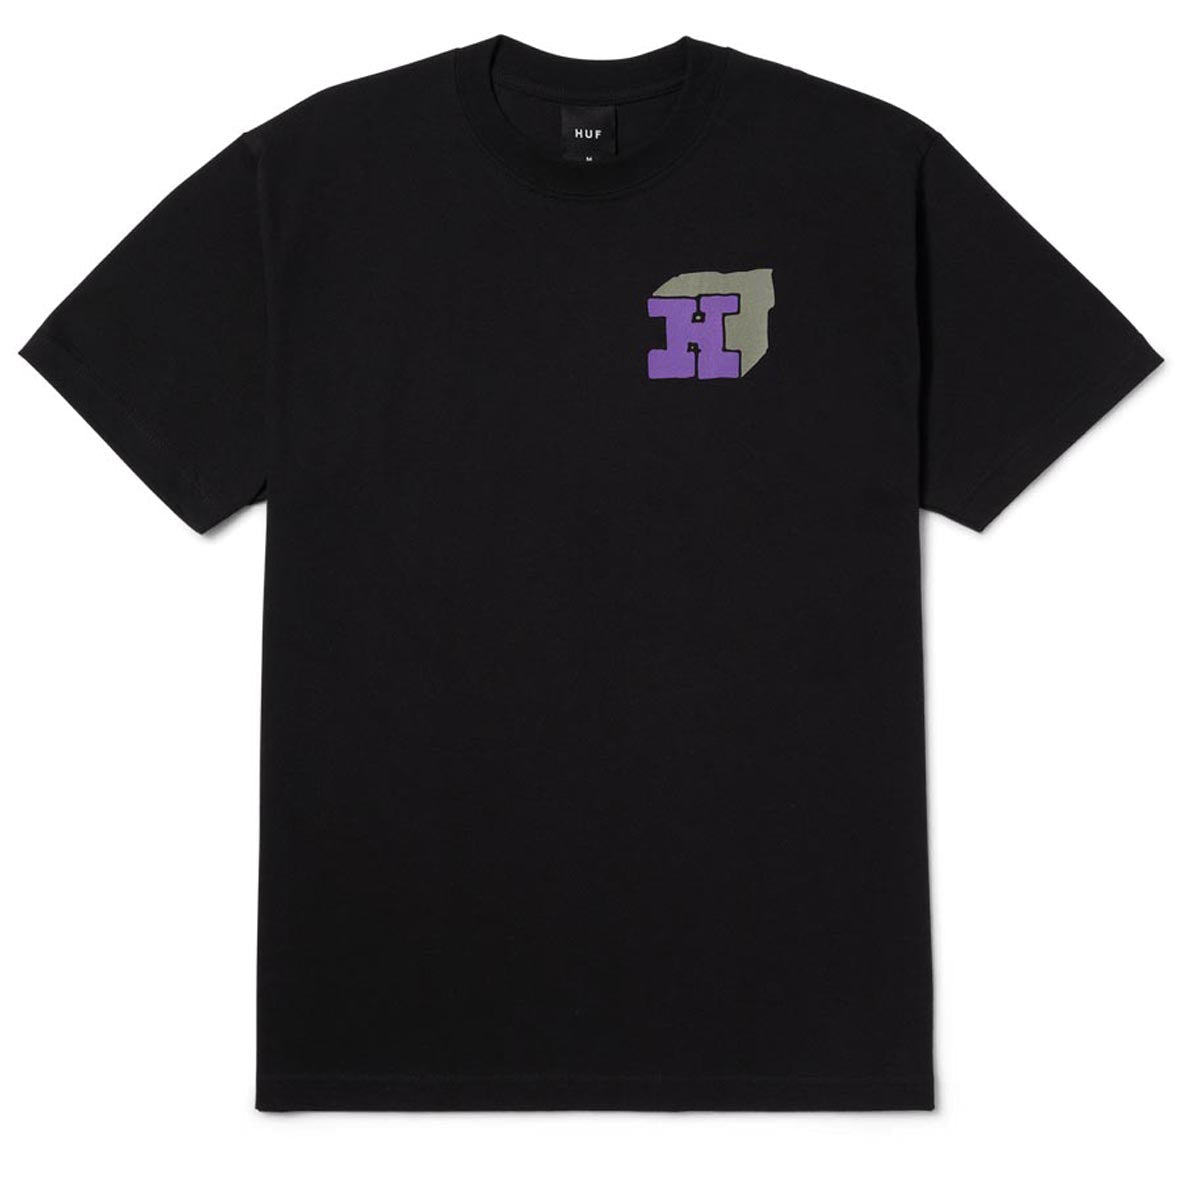 HUF Morex T-Shirt - Black image 1